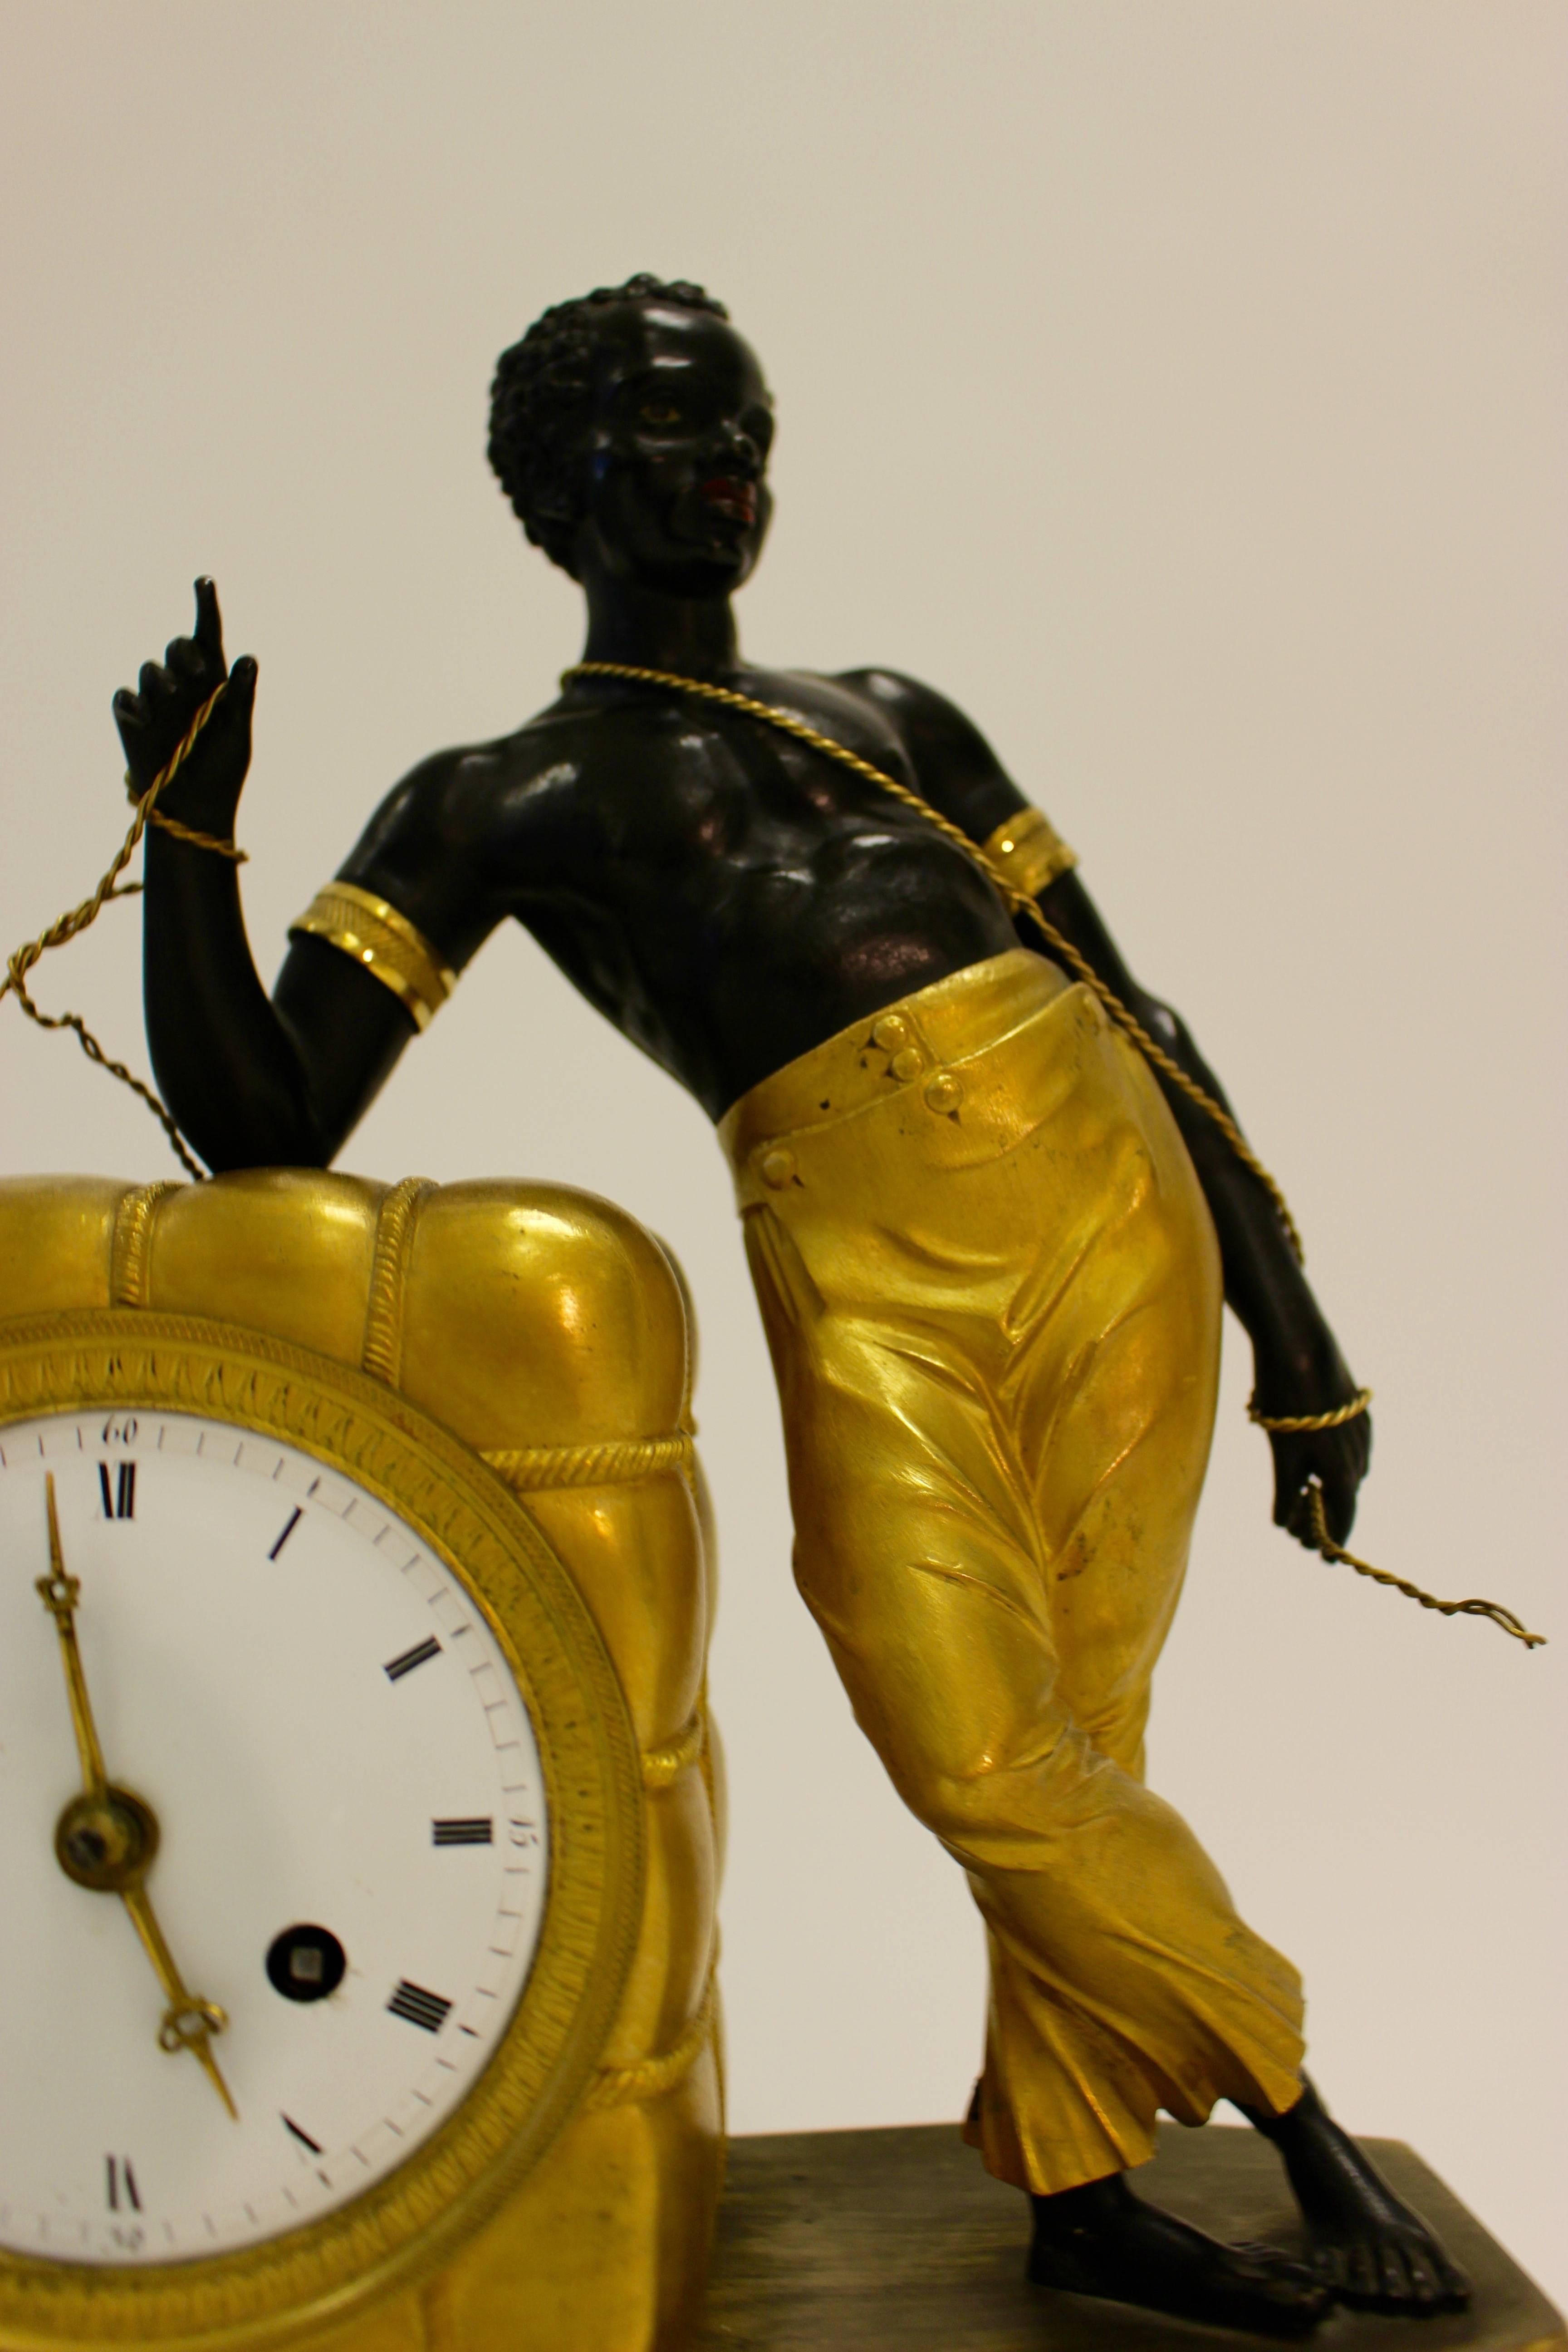 Pendule de cheminée Empire en bronze doré et peint attribuée à Jean-Simon Deverberie. Présenté dans un boîtier en bronze doré en forme de balle de coton, le cadran rond en émail présente des heures en chiffres romains et des graduations arabes en